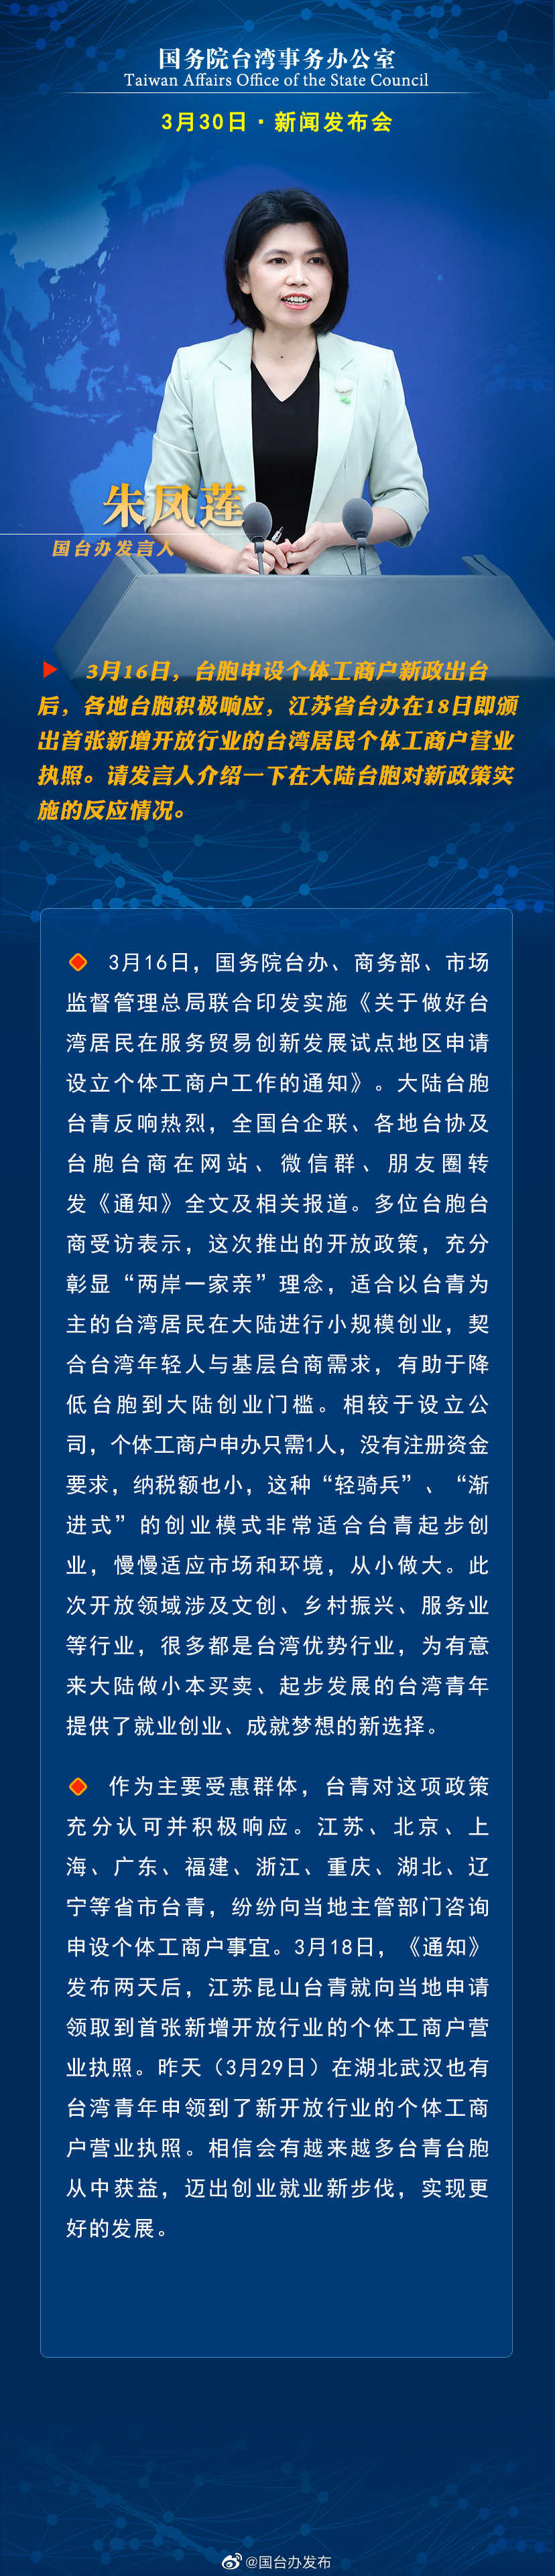 国务院台湾事务办公室3月30日·新闻发布会